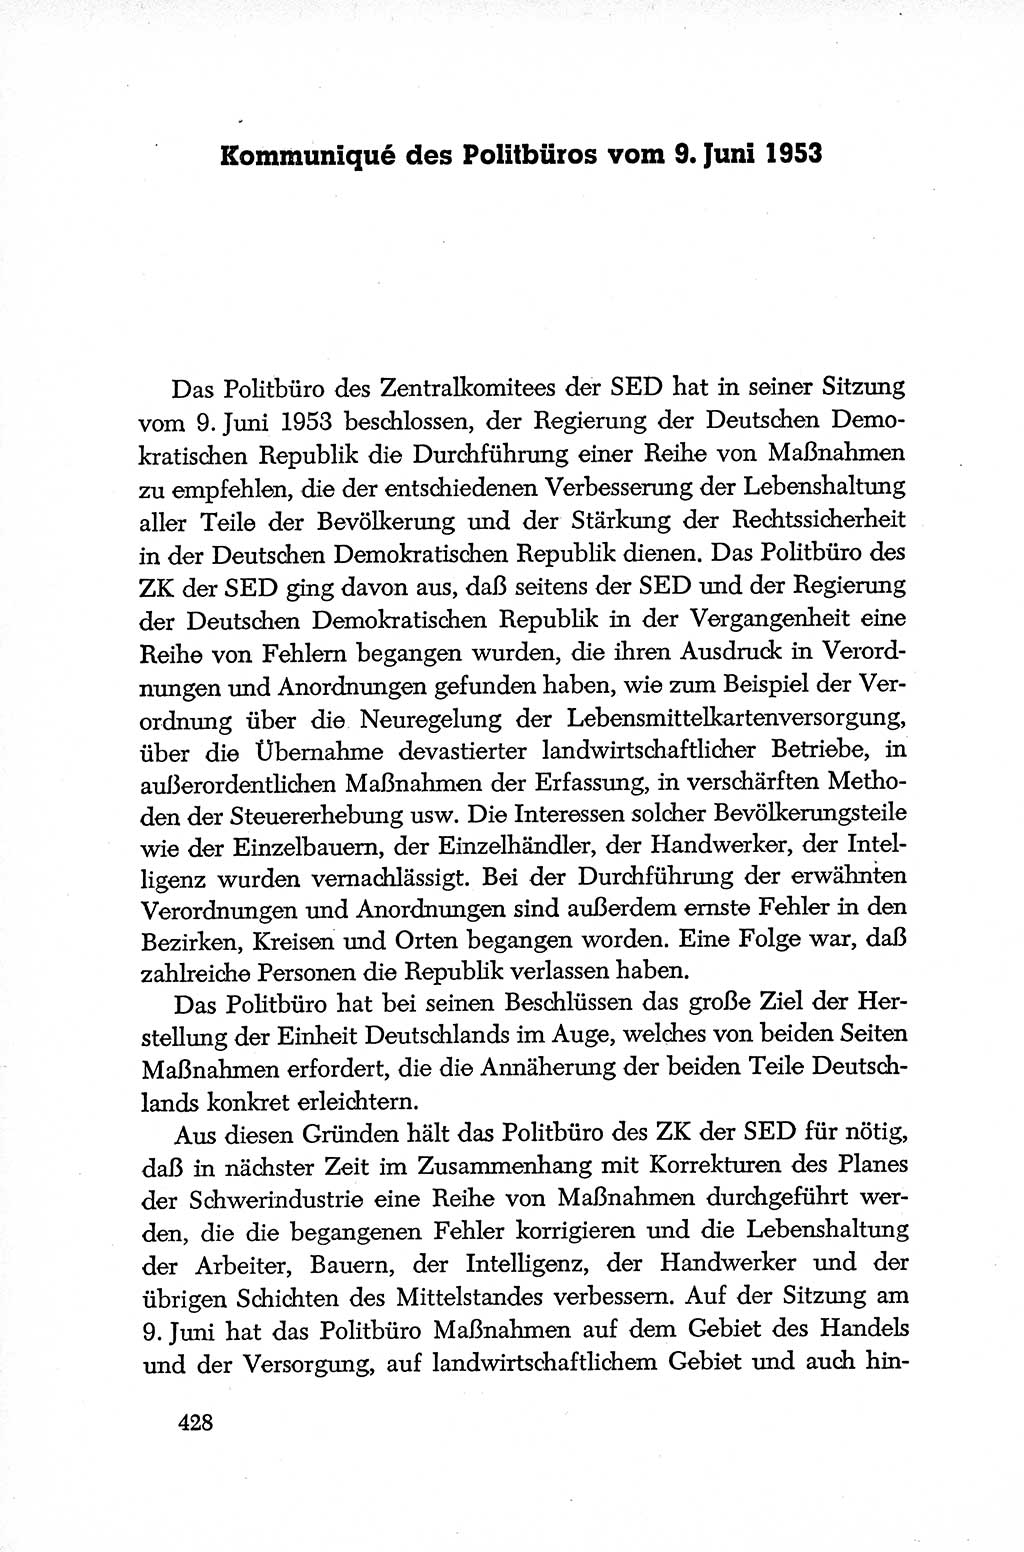 Dokumente der Sozialistischen Einheitspartei Deutschlands (SED) [Deutsche Demokratische Republik (DDR)] 1952-1953, Seite 428 (Dok. SED DDR 1952-1953, S. 428)